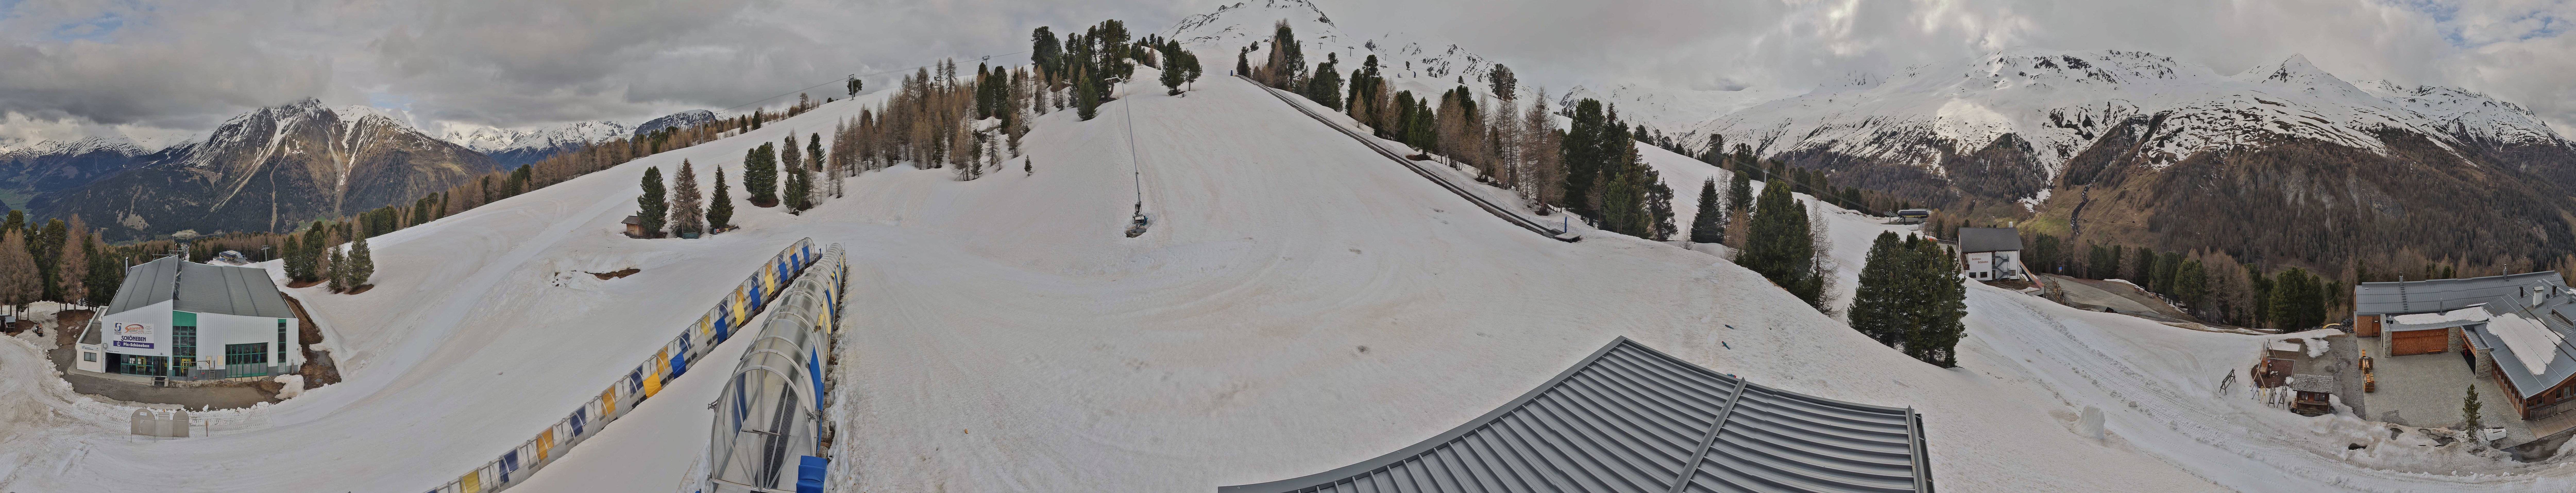 Webcam panoramica cabinovia Schöneboden - Belpiano, Passo Resia